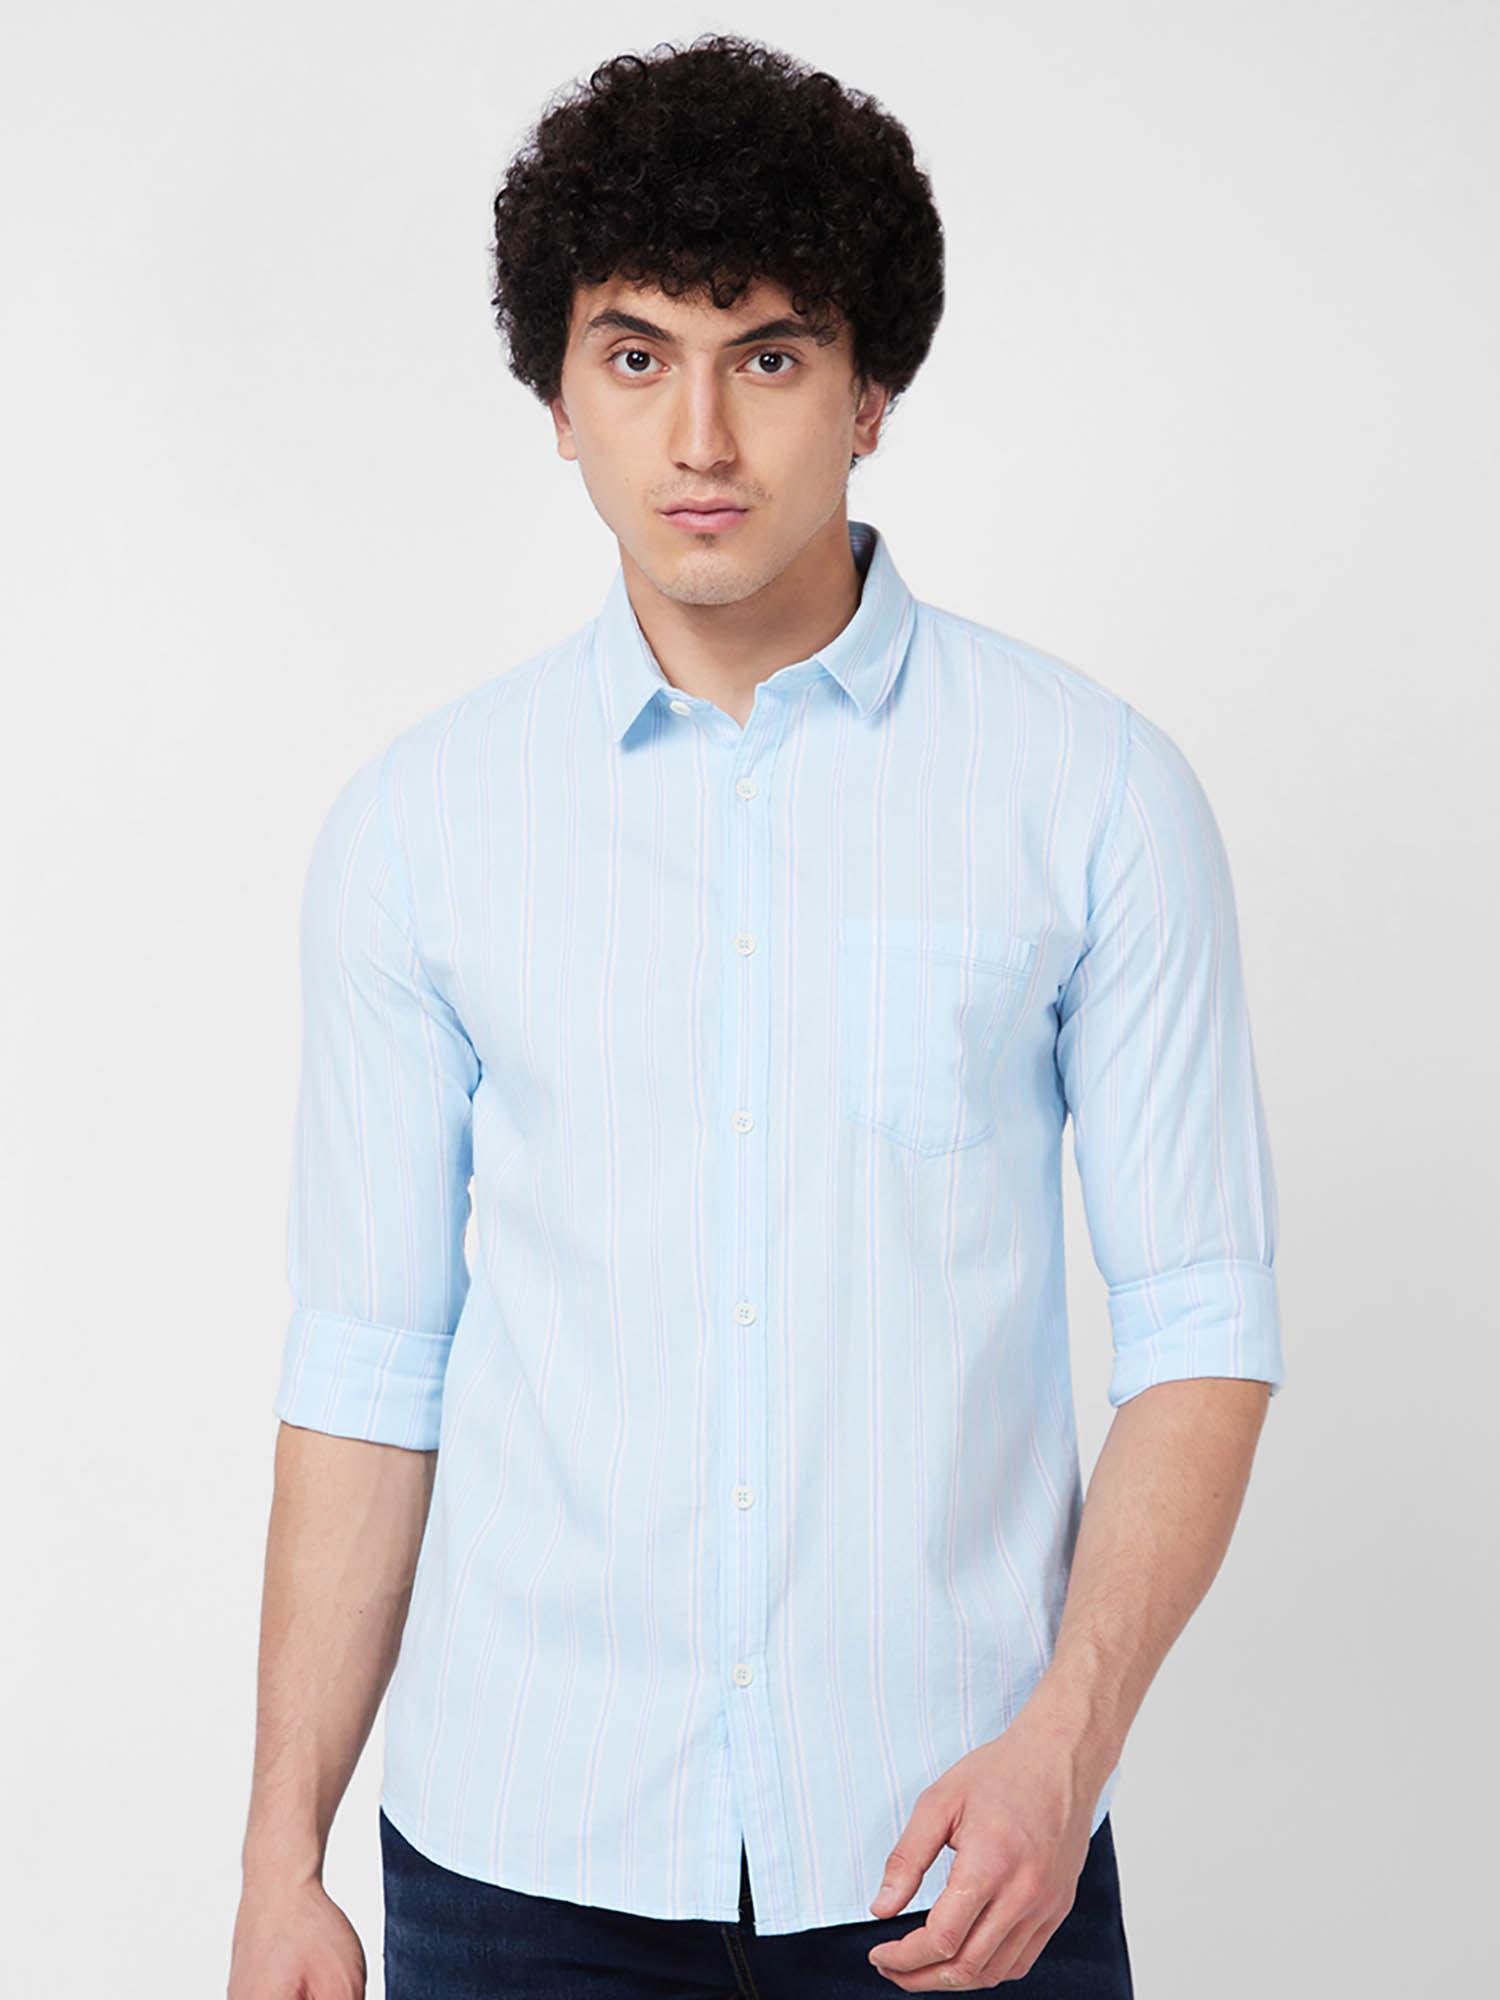 blue striped full sleeve shirt for men